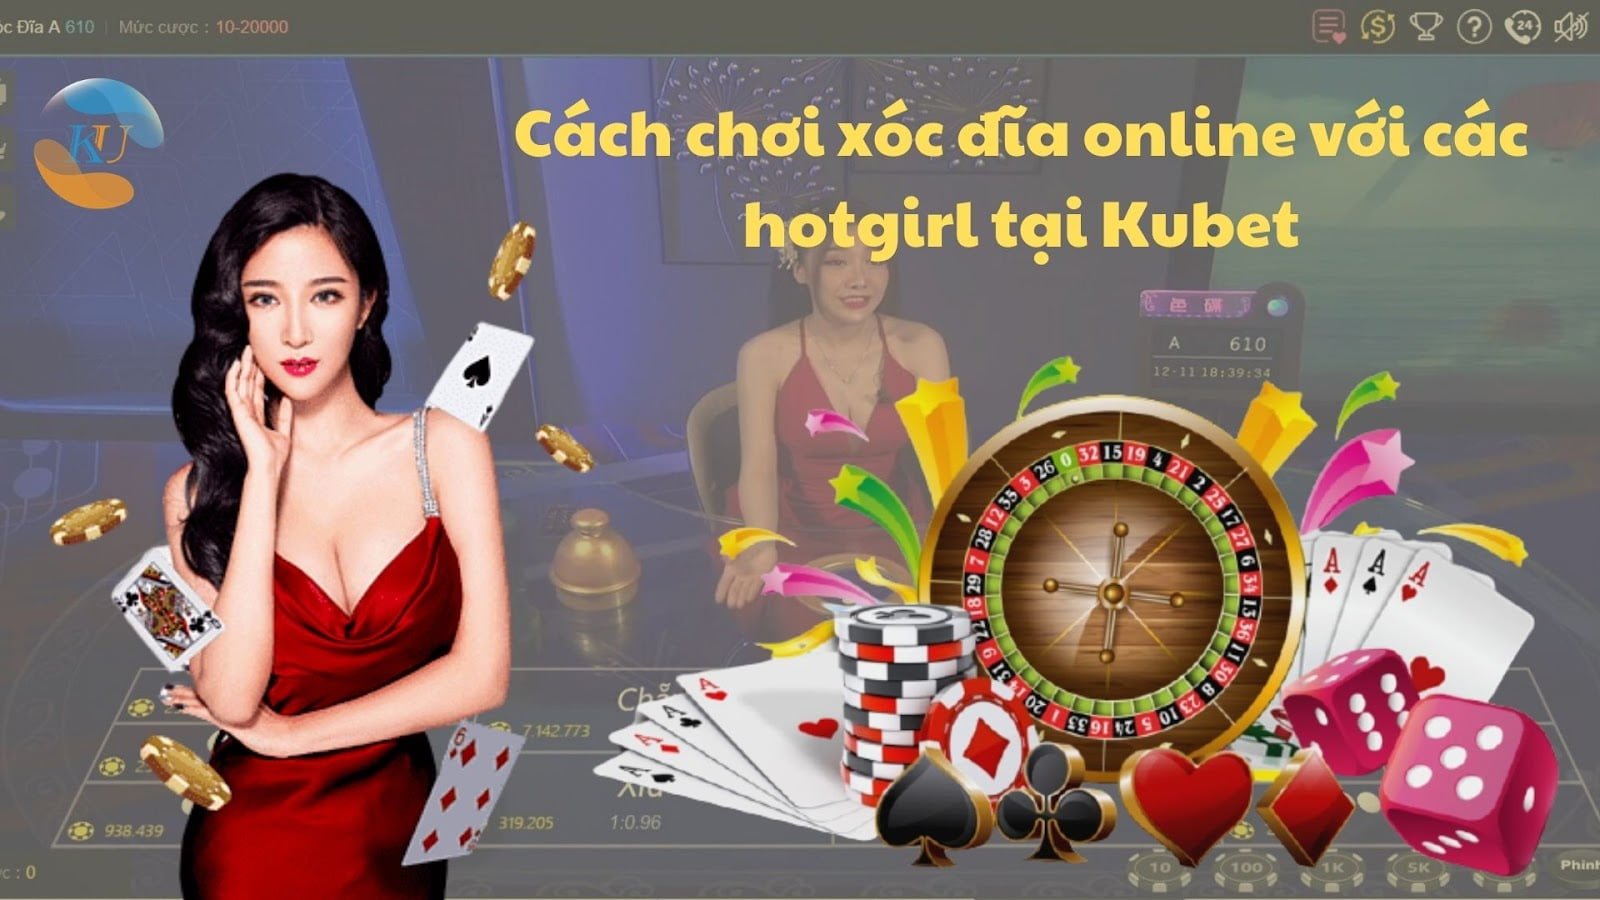 Cách chơi xóc đĩa online với các hotgirl tại Kubet